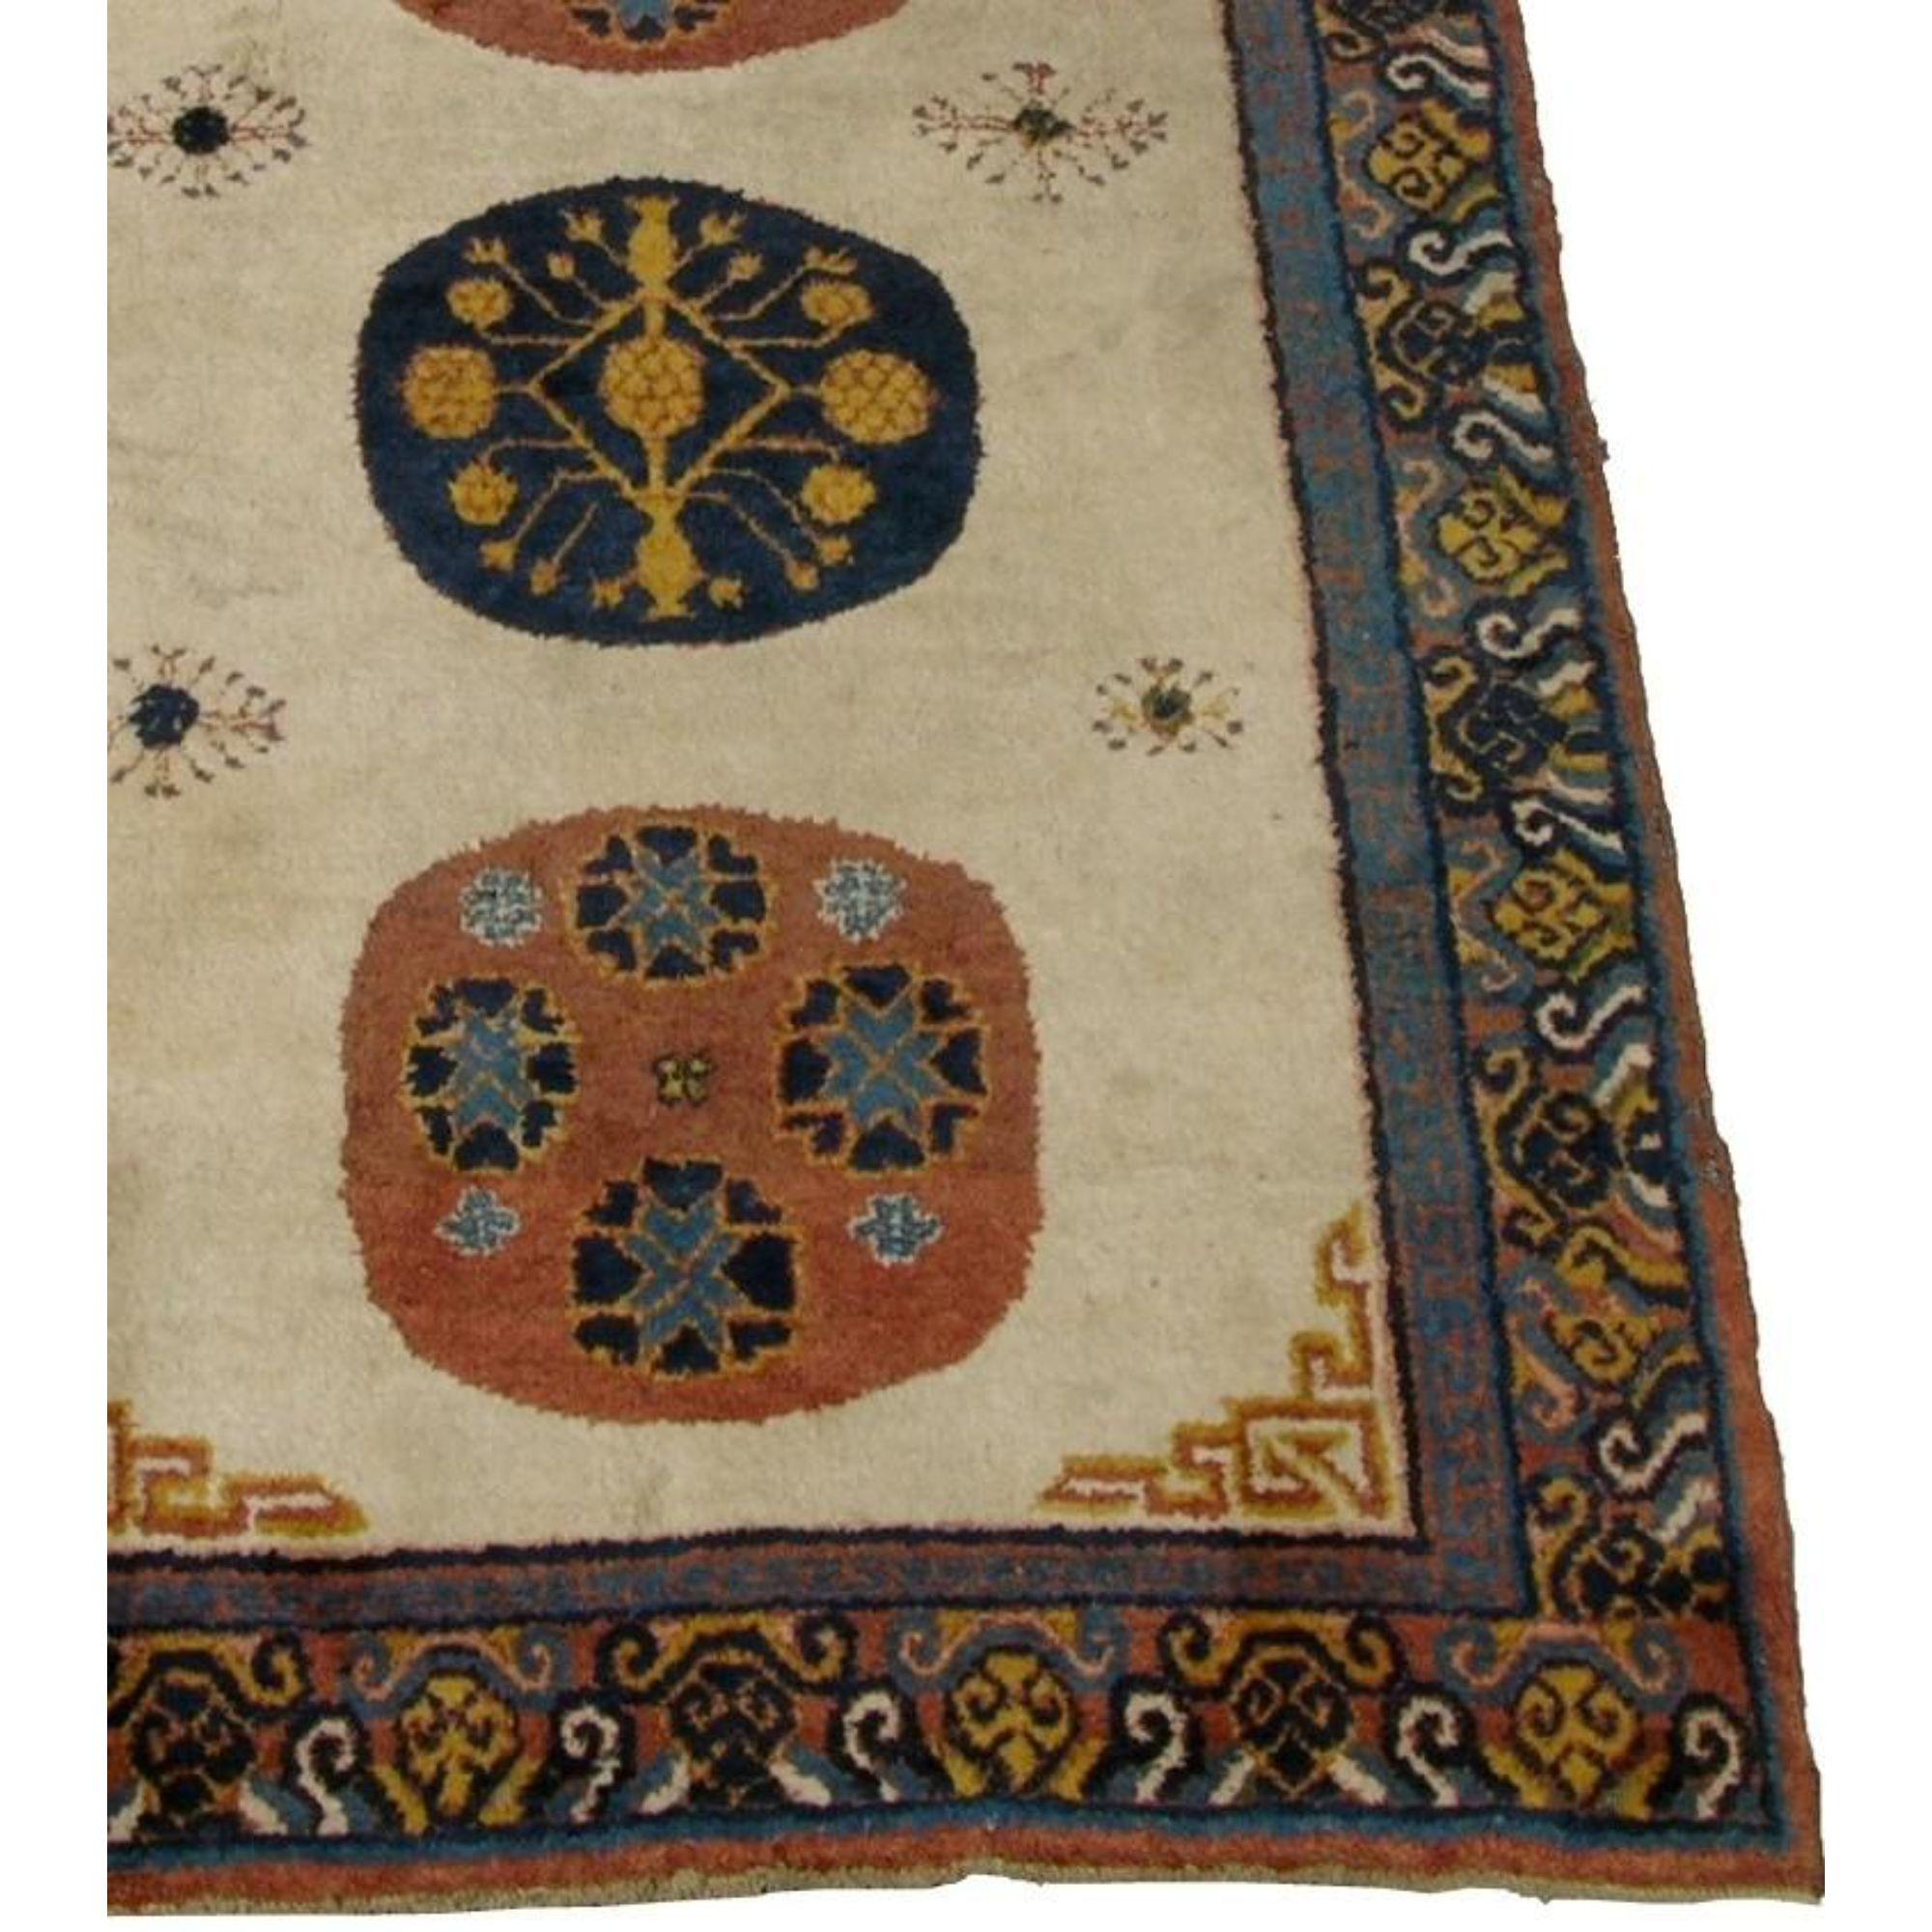 Up&Up est un authentique tapis ouzbek Samarkand des années 1900. Il a un style traditionnel et tribal.